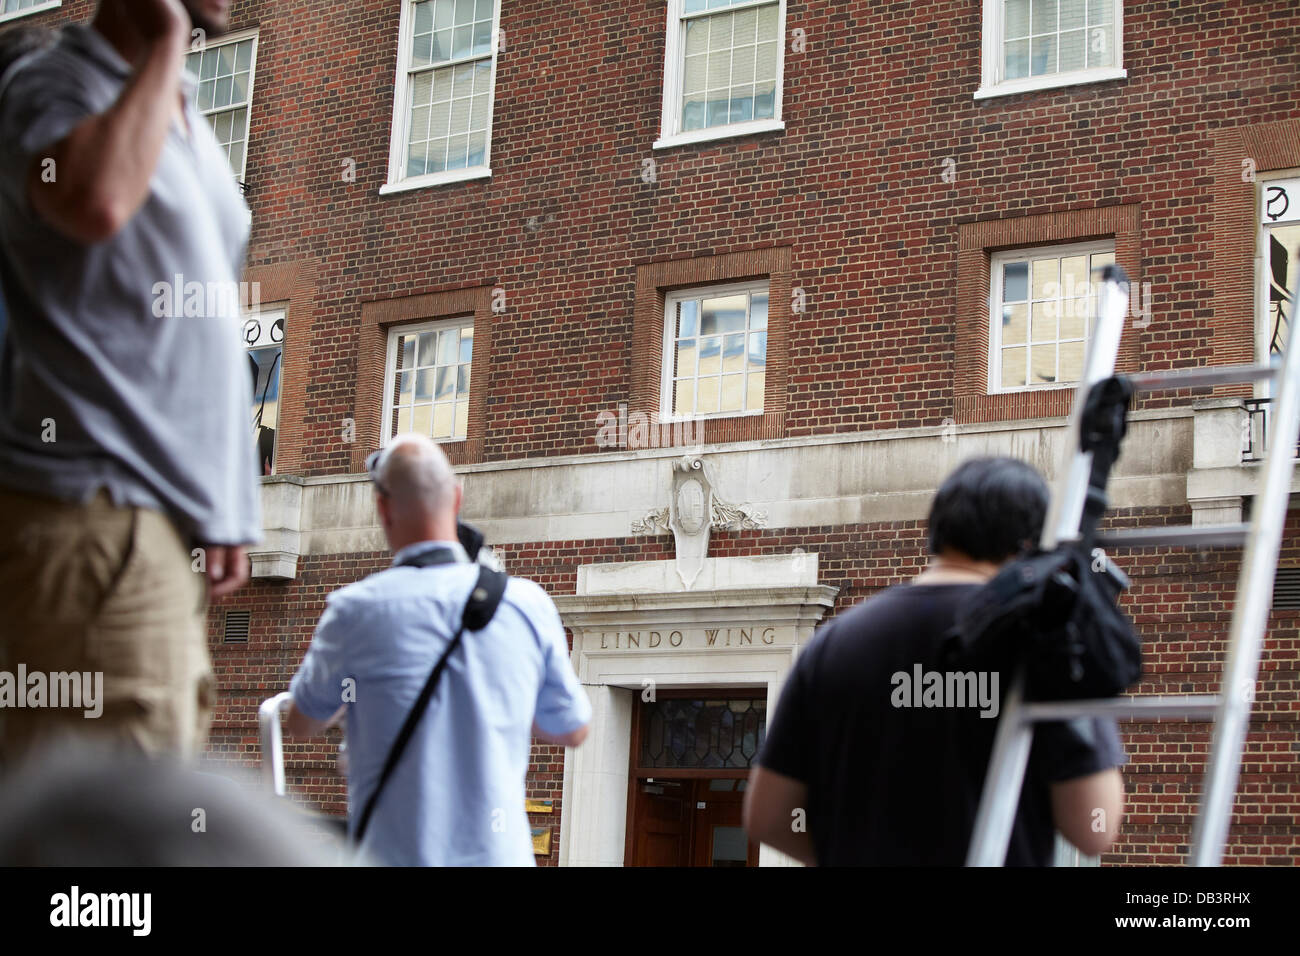 Londres, Royaume-Uni. 23 juillet 2013. Appuyez sur attendre à l'extérieur de l'aile Lindo de l'hôpital Saint Mary. Le mardi 23 juillet 2013 Crédit : Sam Barnes/Alamy Live News Banque D'Images